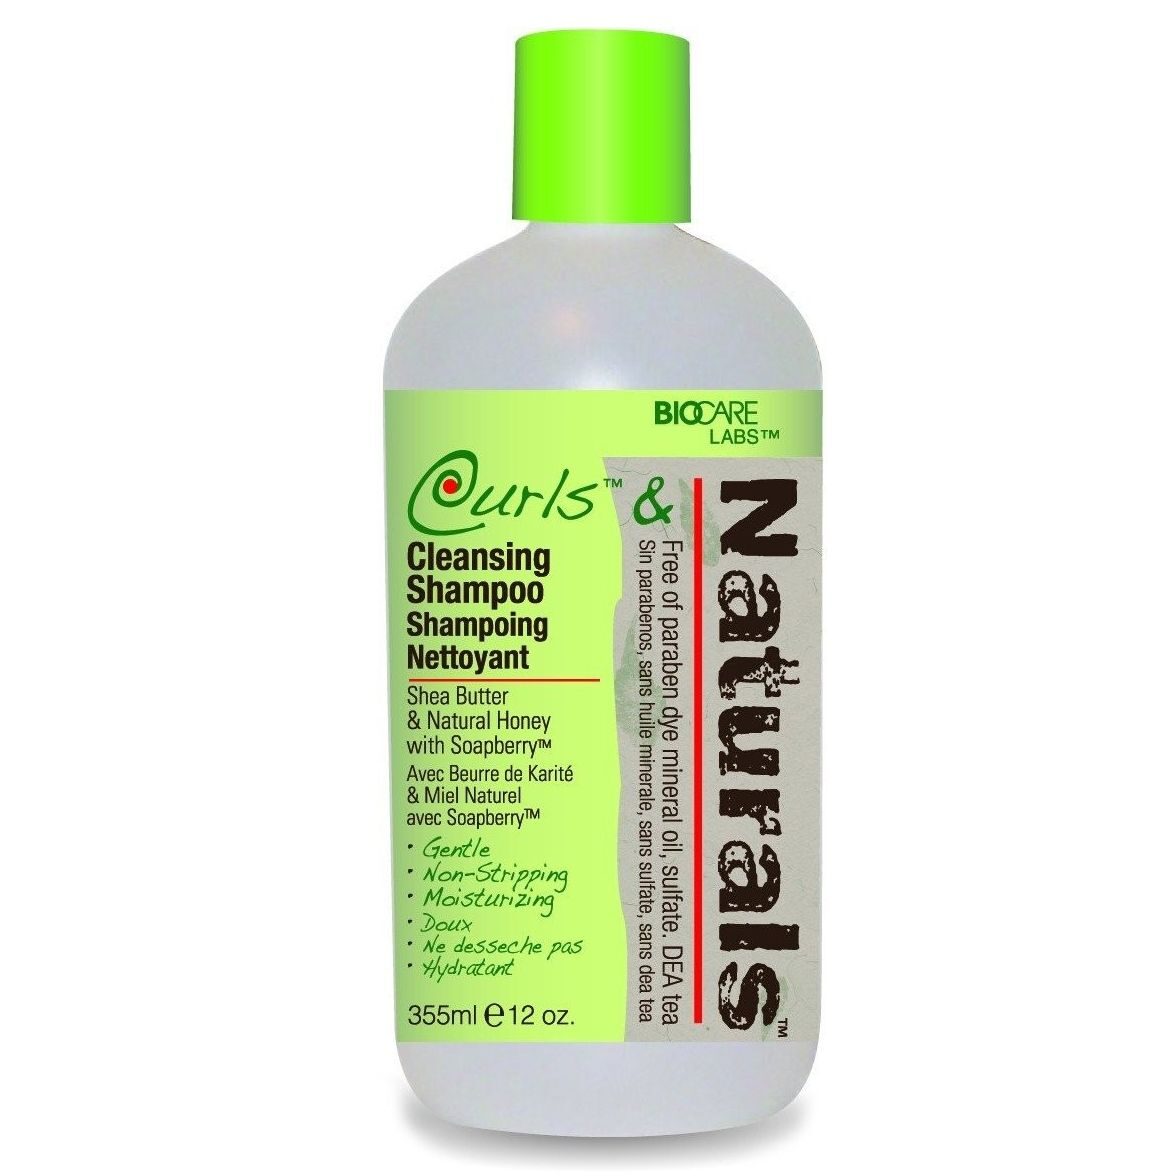 Biocare Curls & Naturals Cleansing Shampoo 355 ml